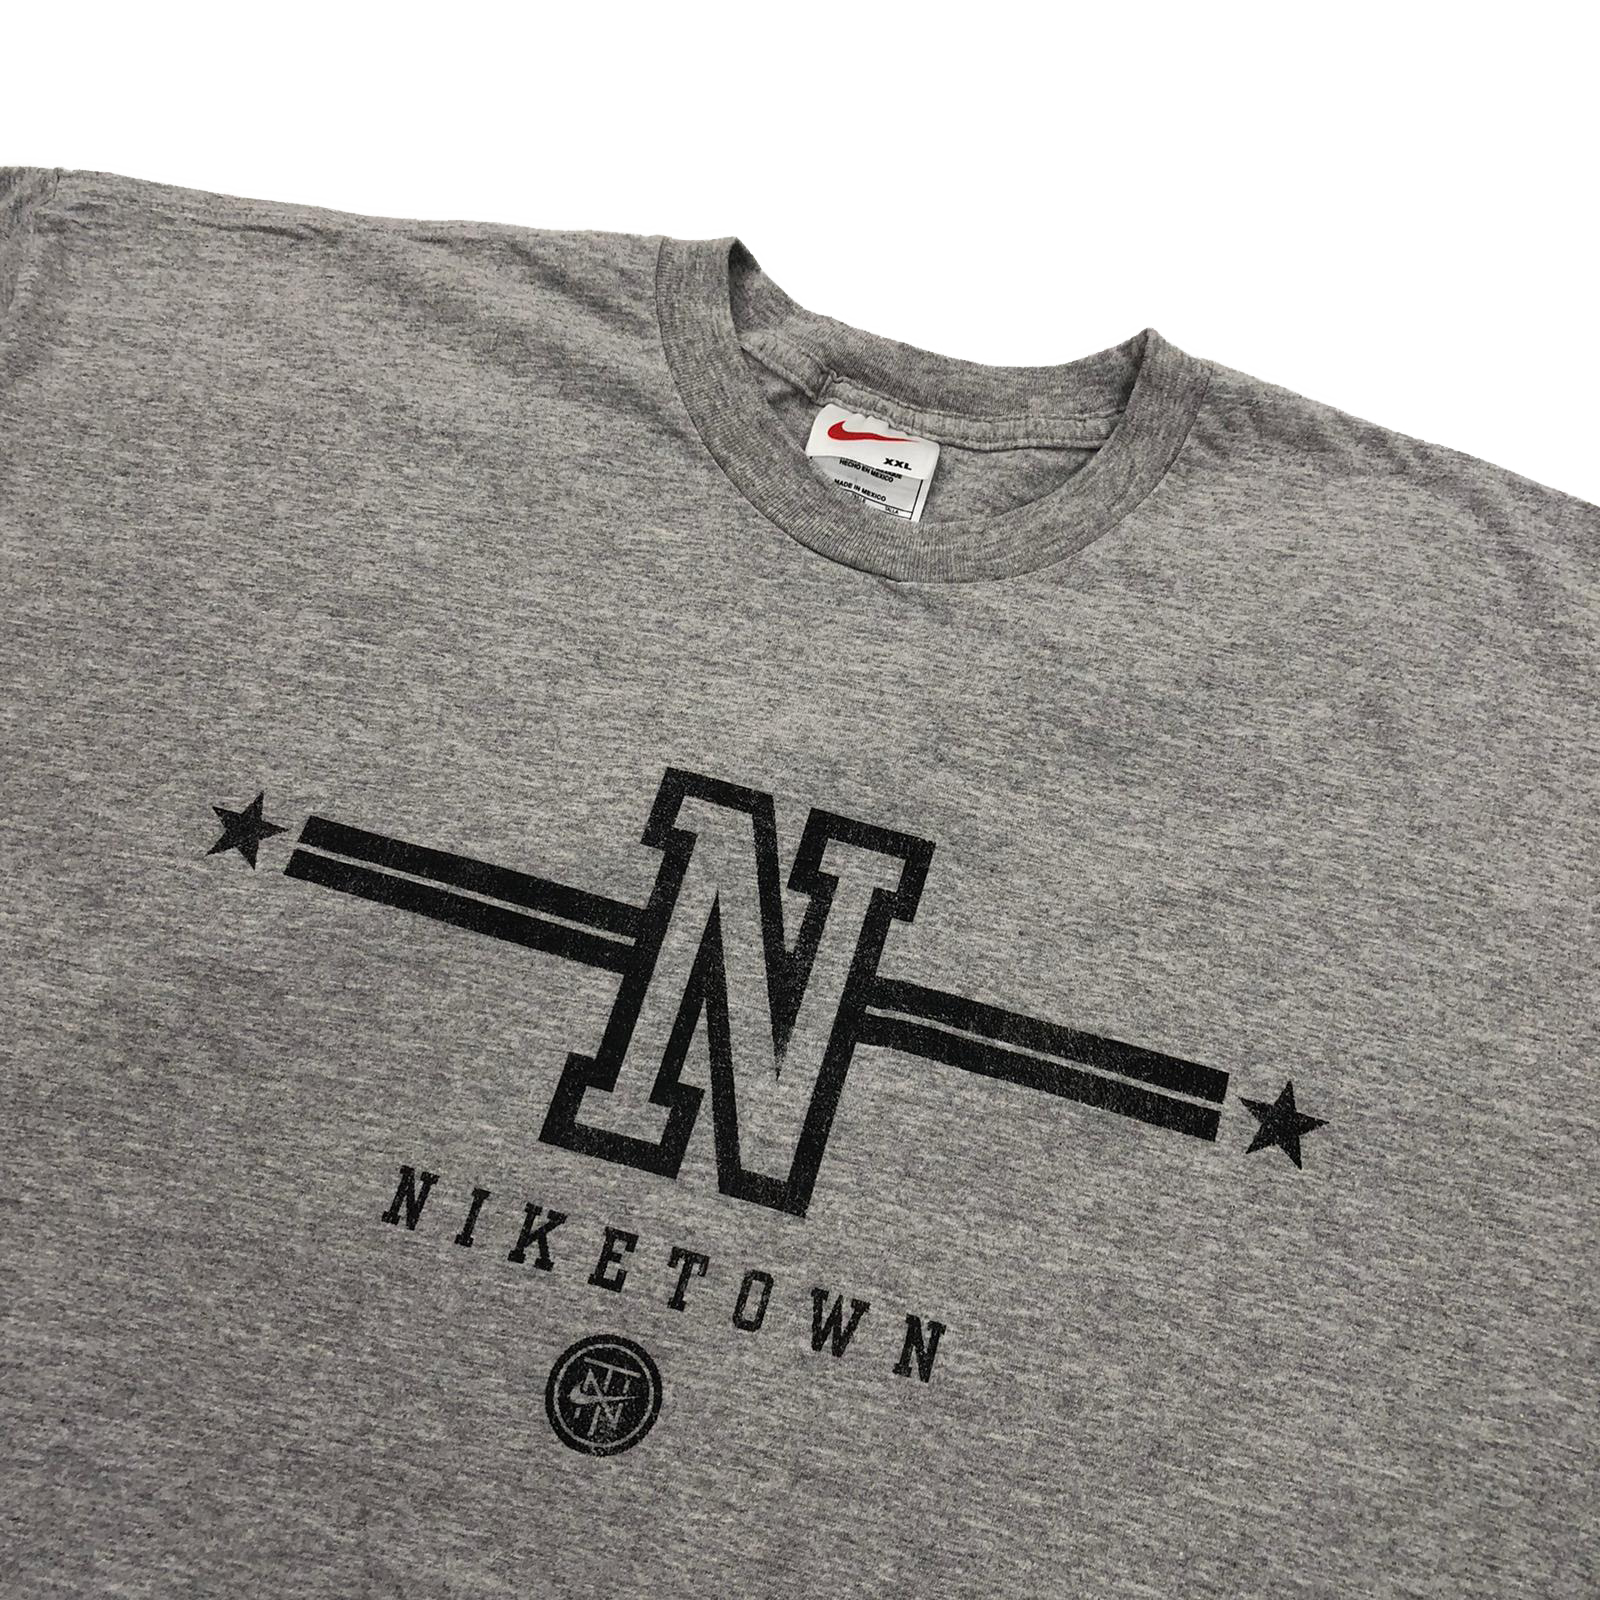 90's Nike Town t-shirt